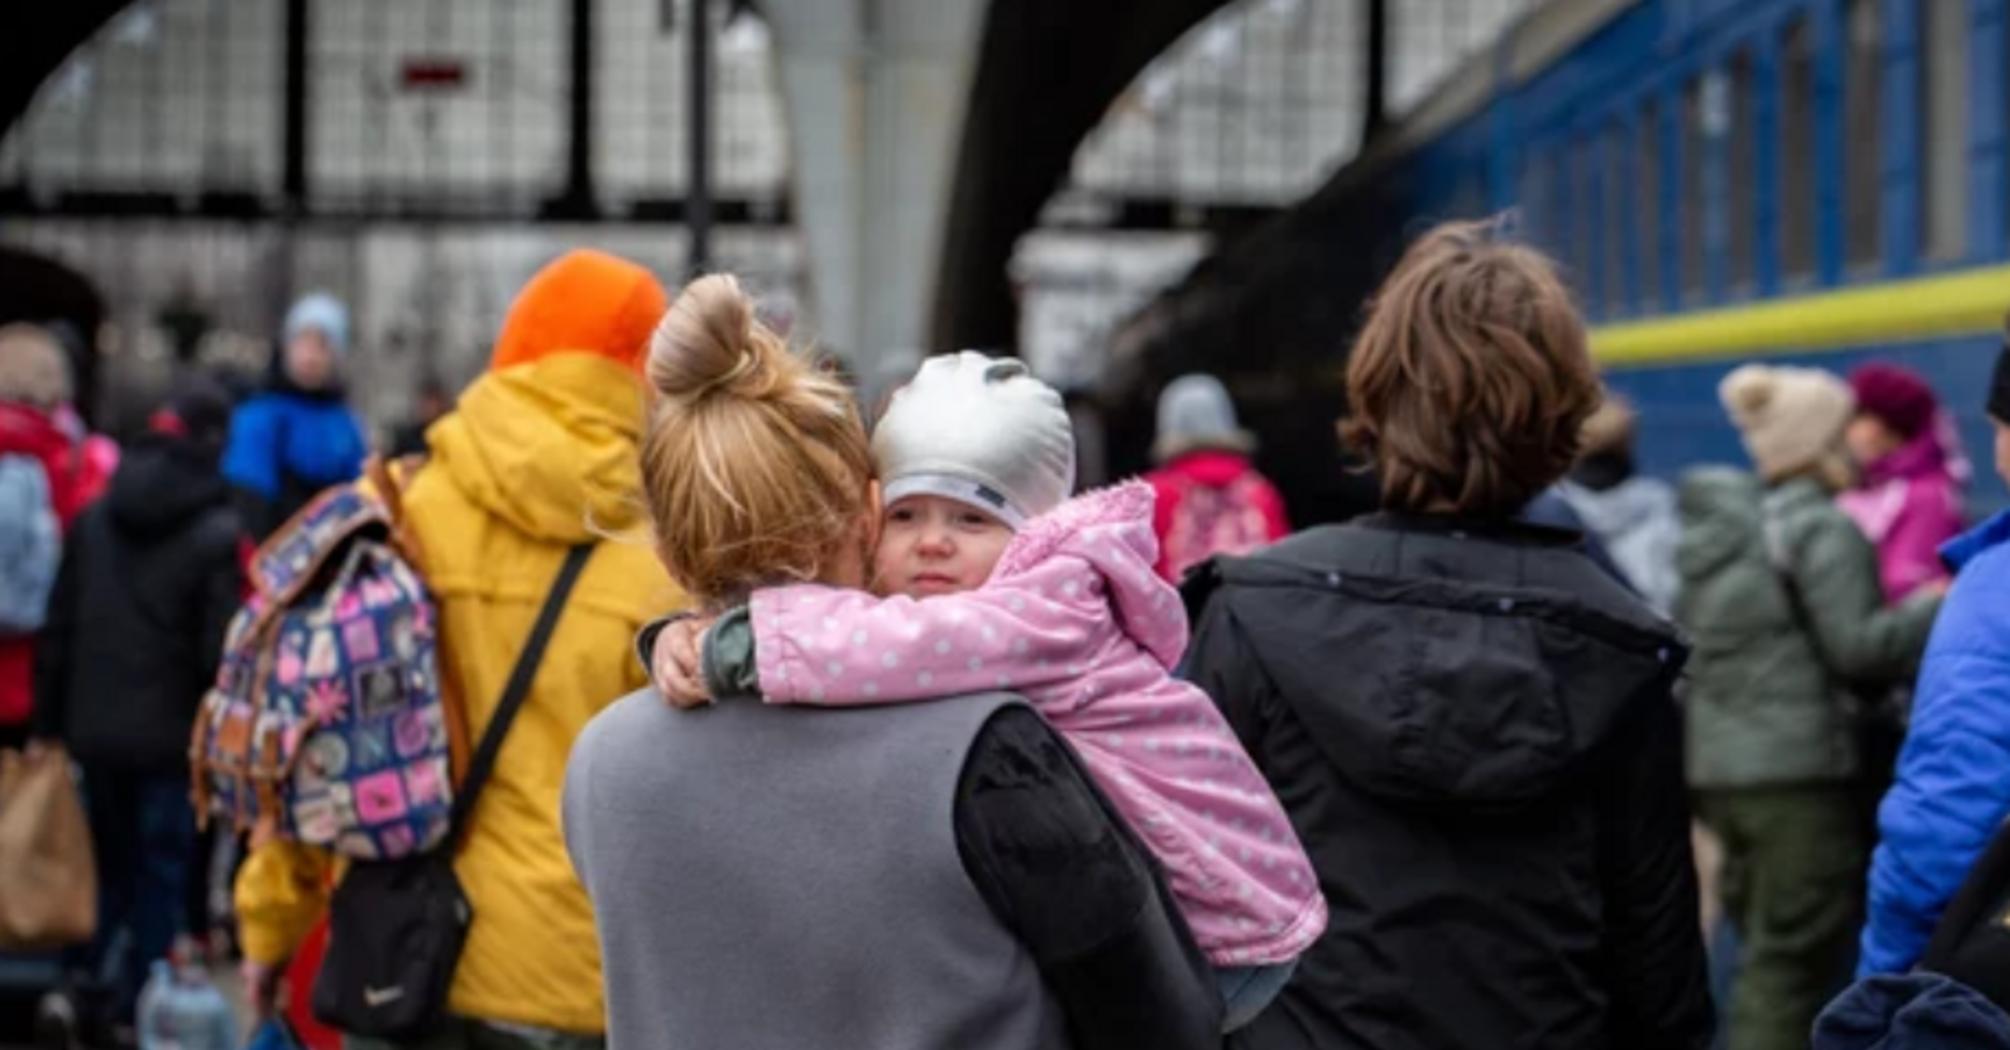 В Польше прекратили выплату единовременной помощи украинским беженцам: о чем идет речь